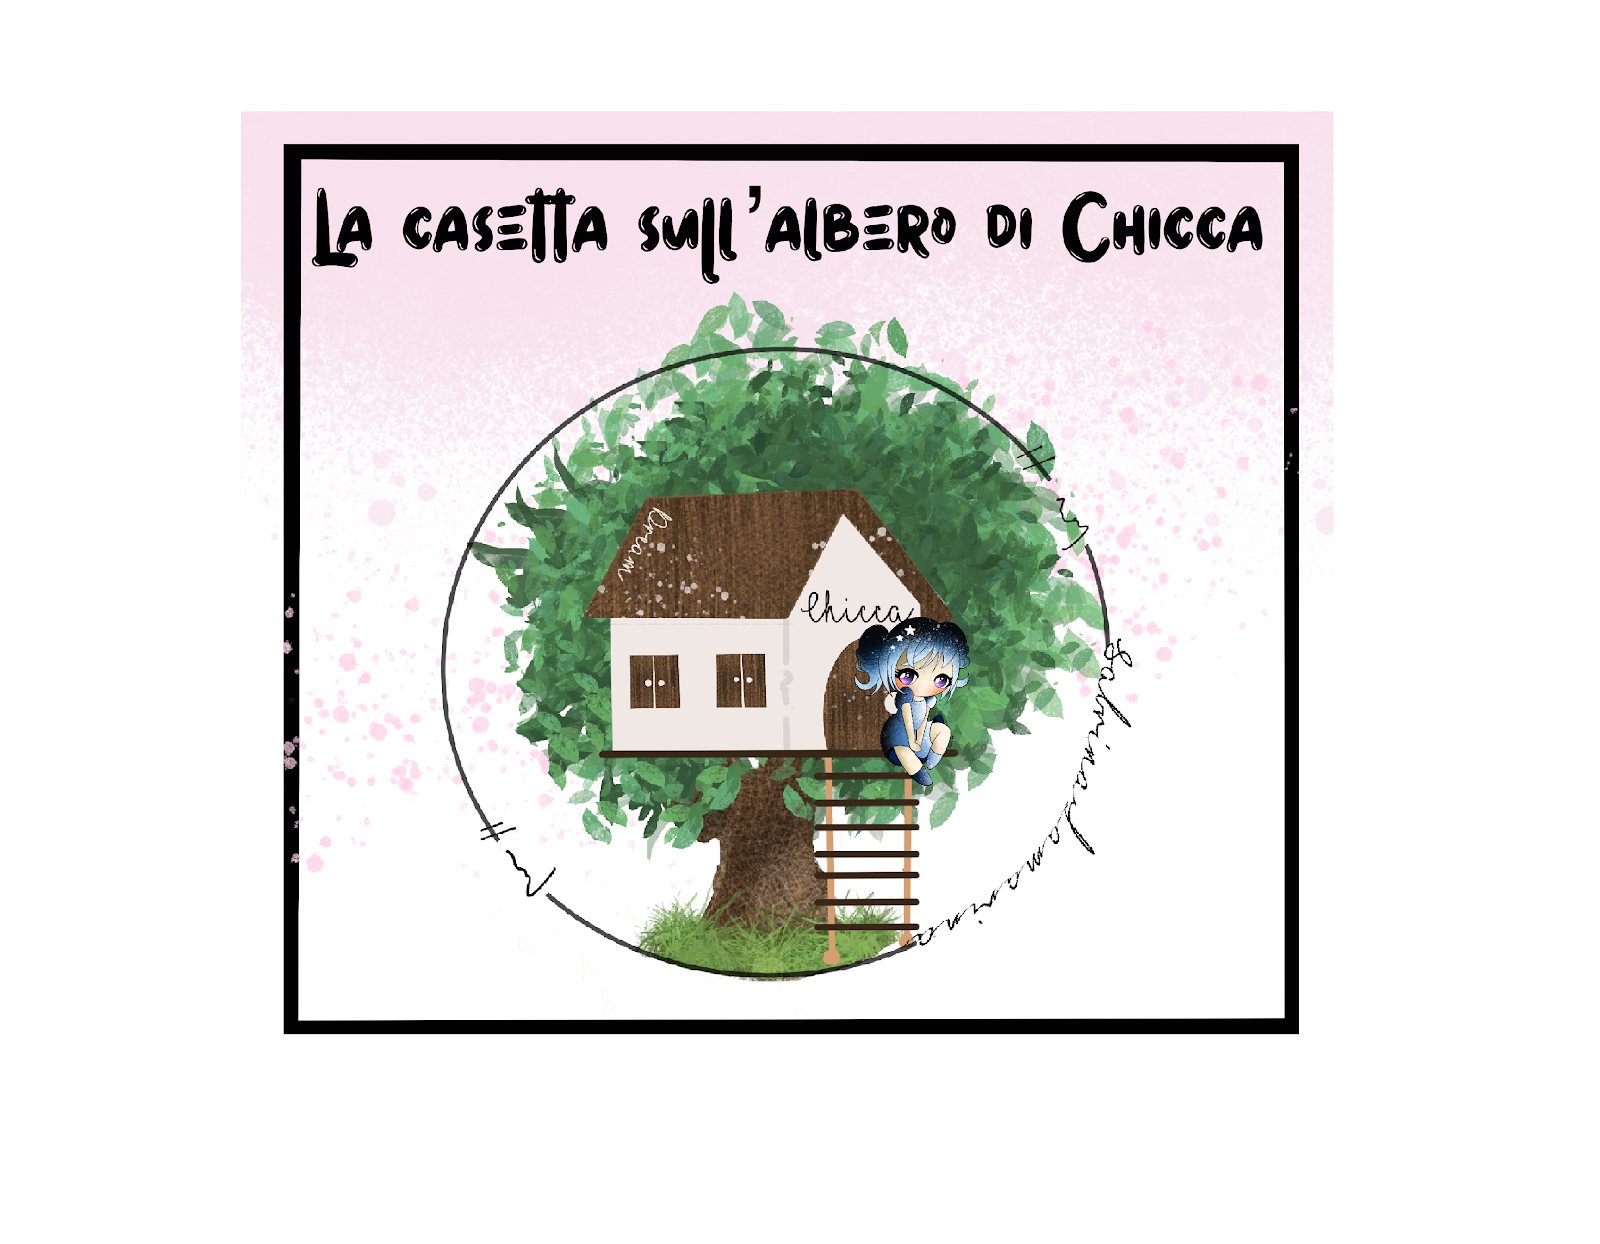 Il Blog de "La Casetta sull'albero di Chicca"